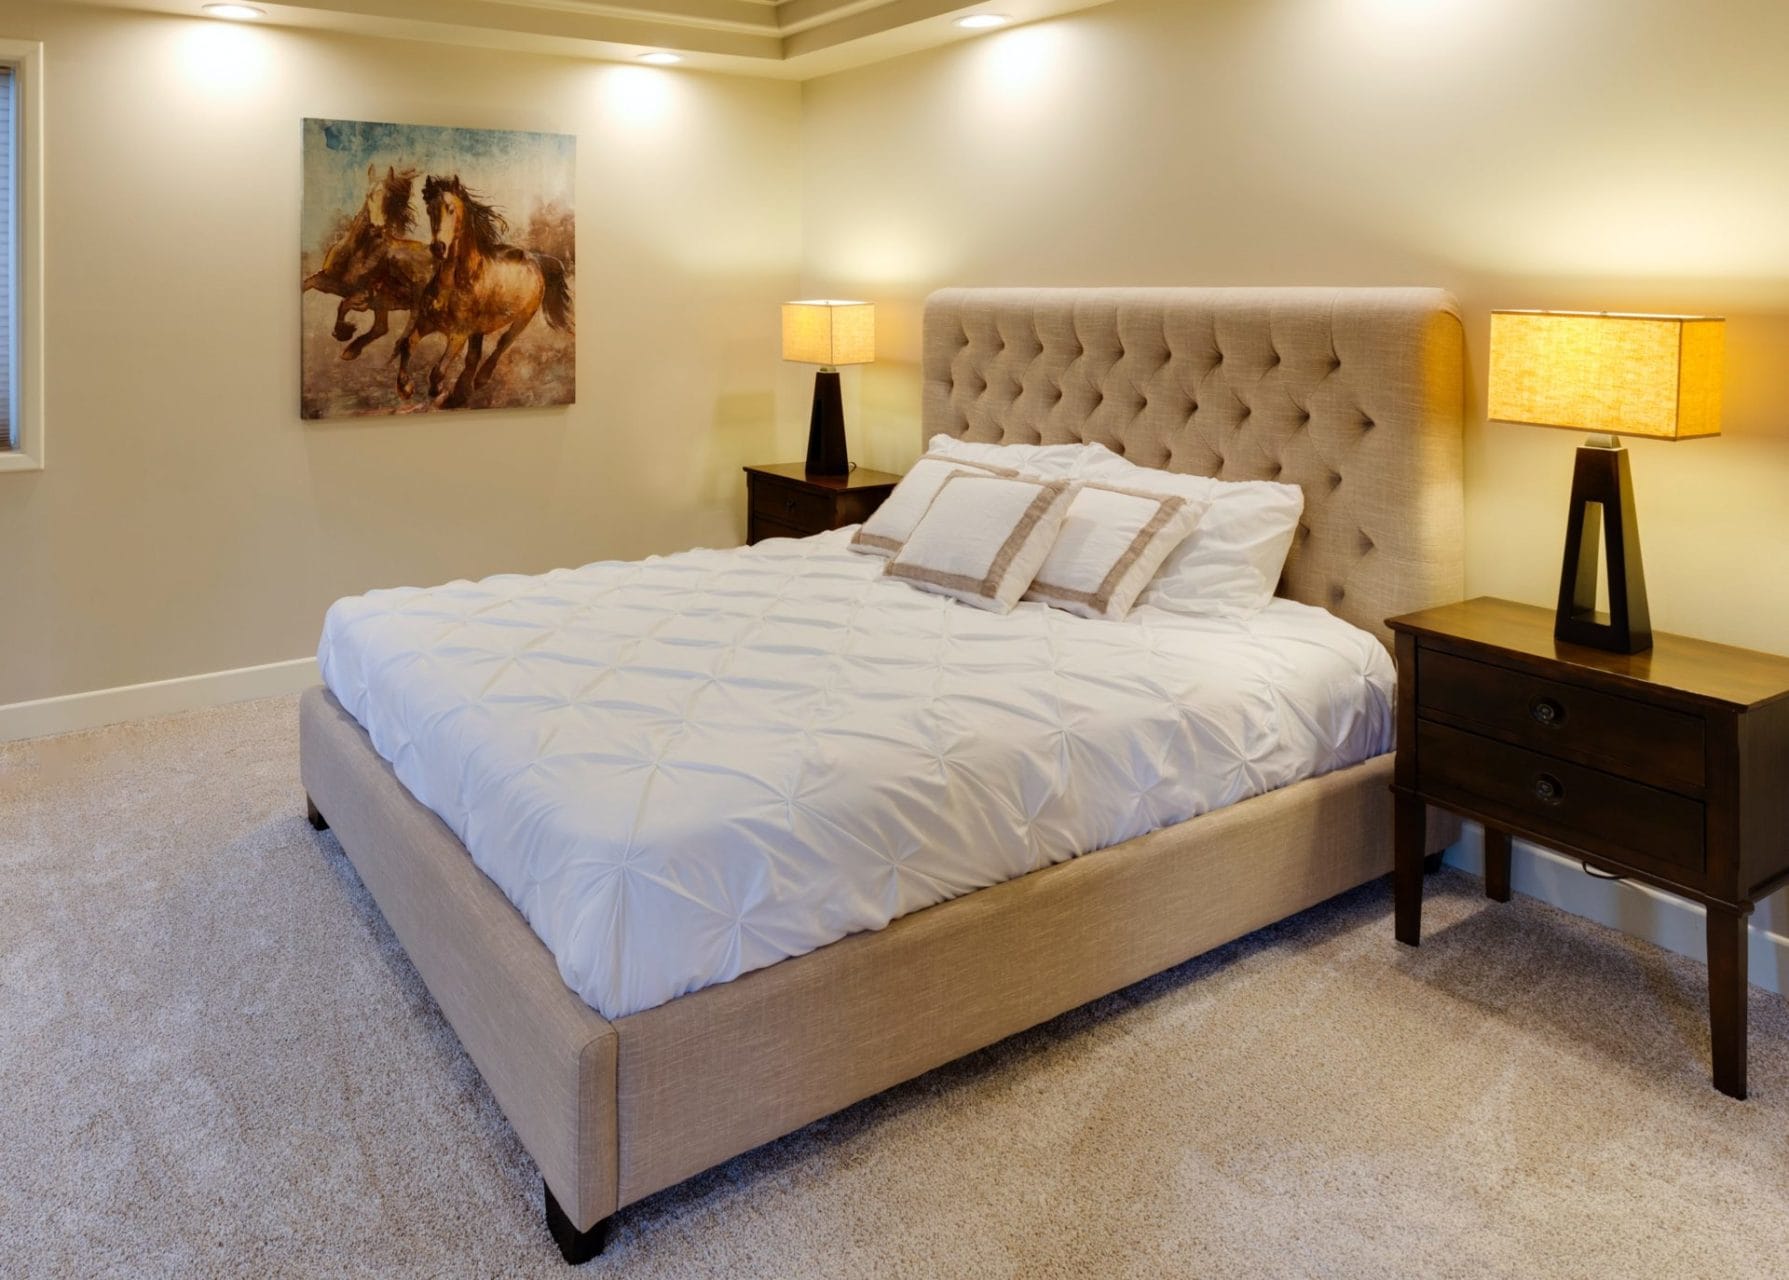 master bedroom remodel - improved lighting.